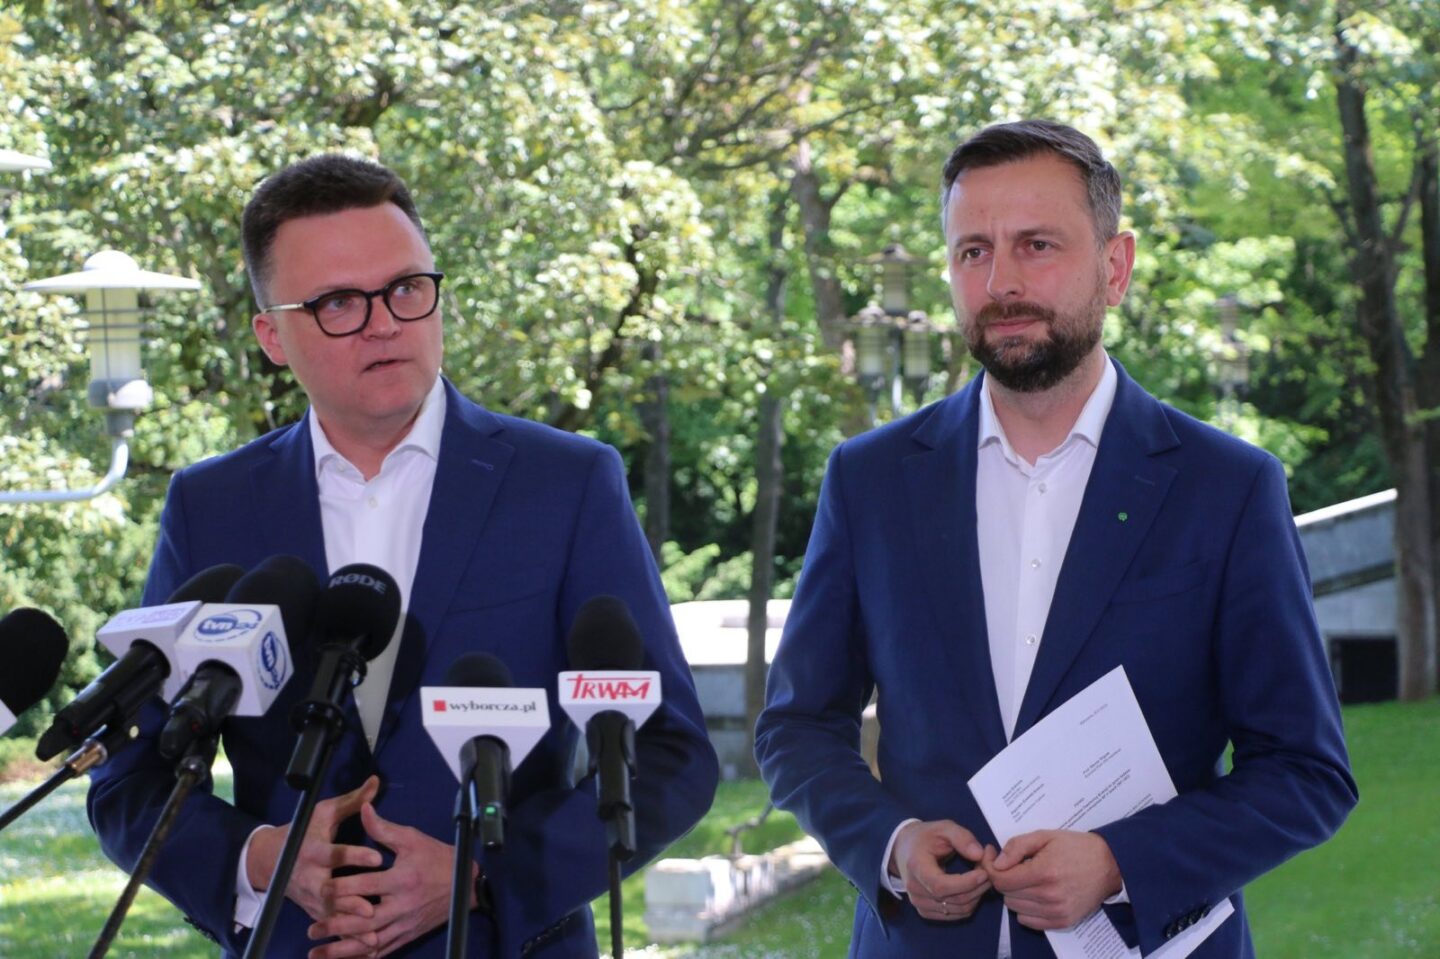 Szymona Hołownia i Władysław Kosiniak Kamysz jako Trzecia Droga ogładzają, że wezmą udział w marszu 4 czerwca w Warszawie